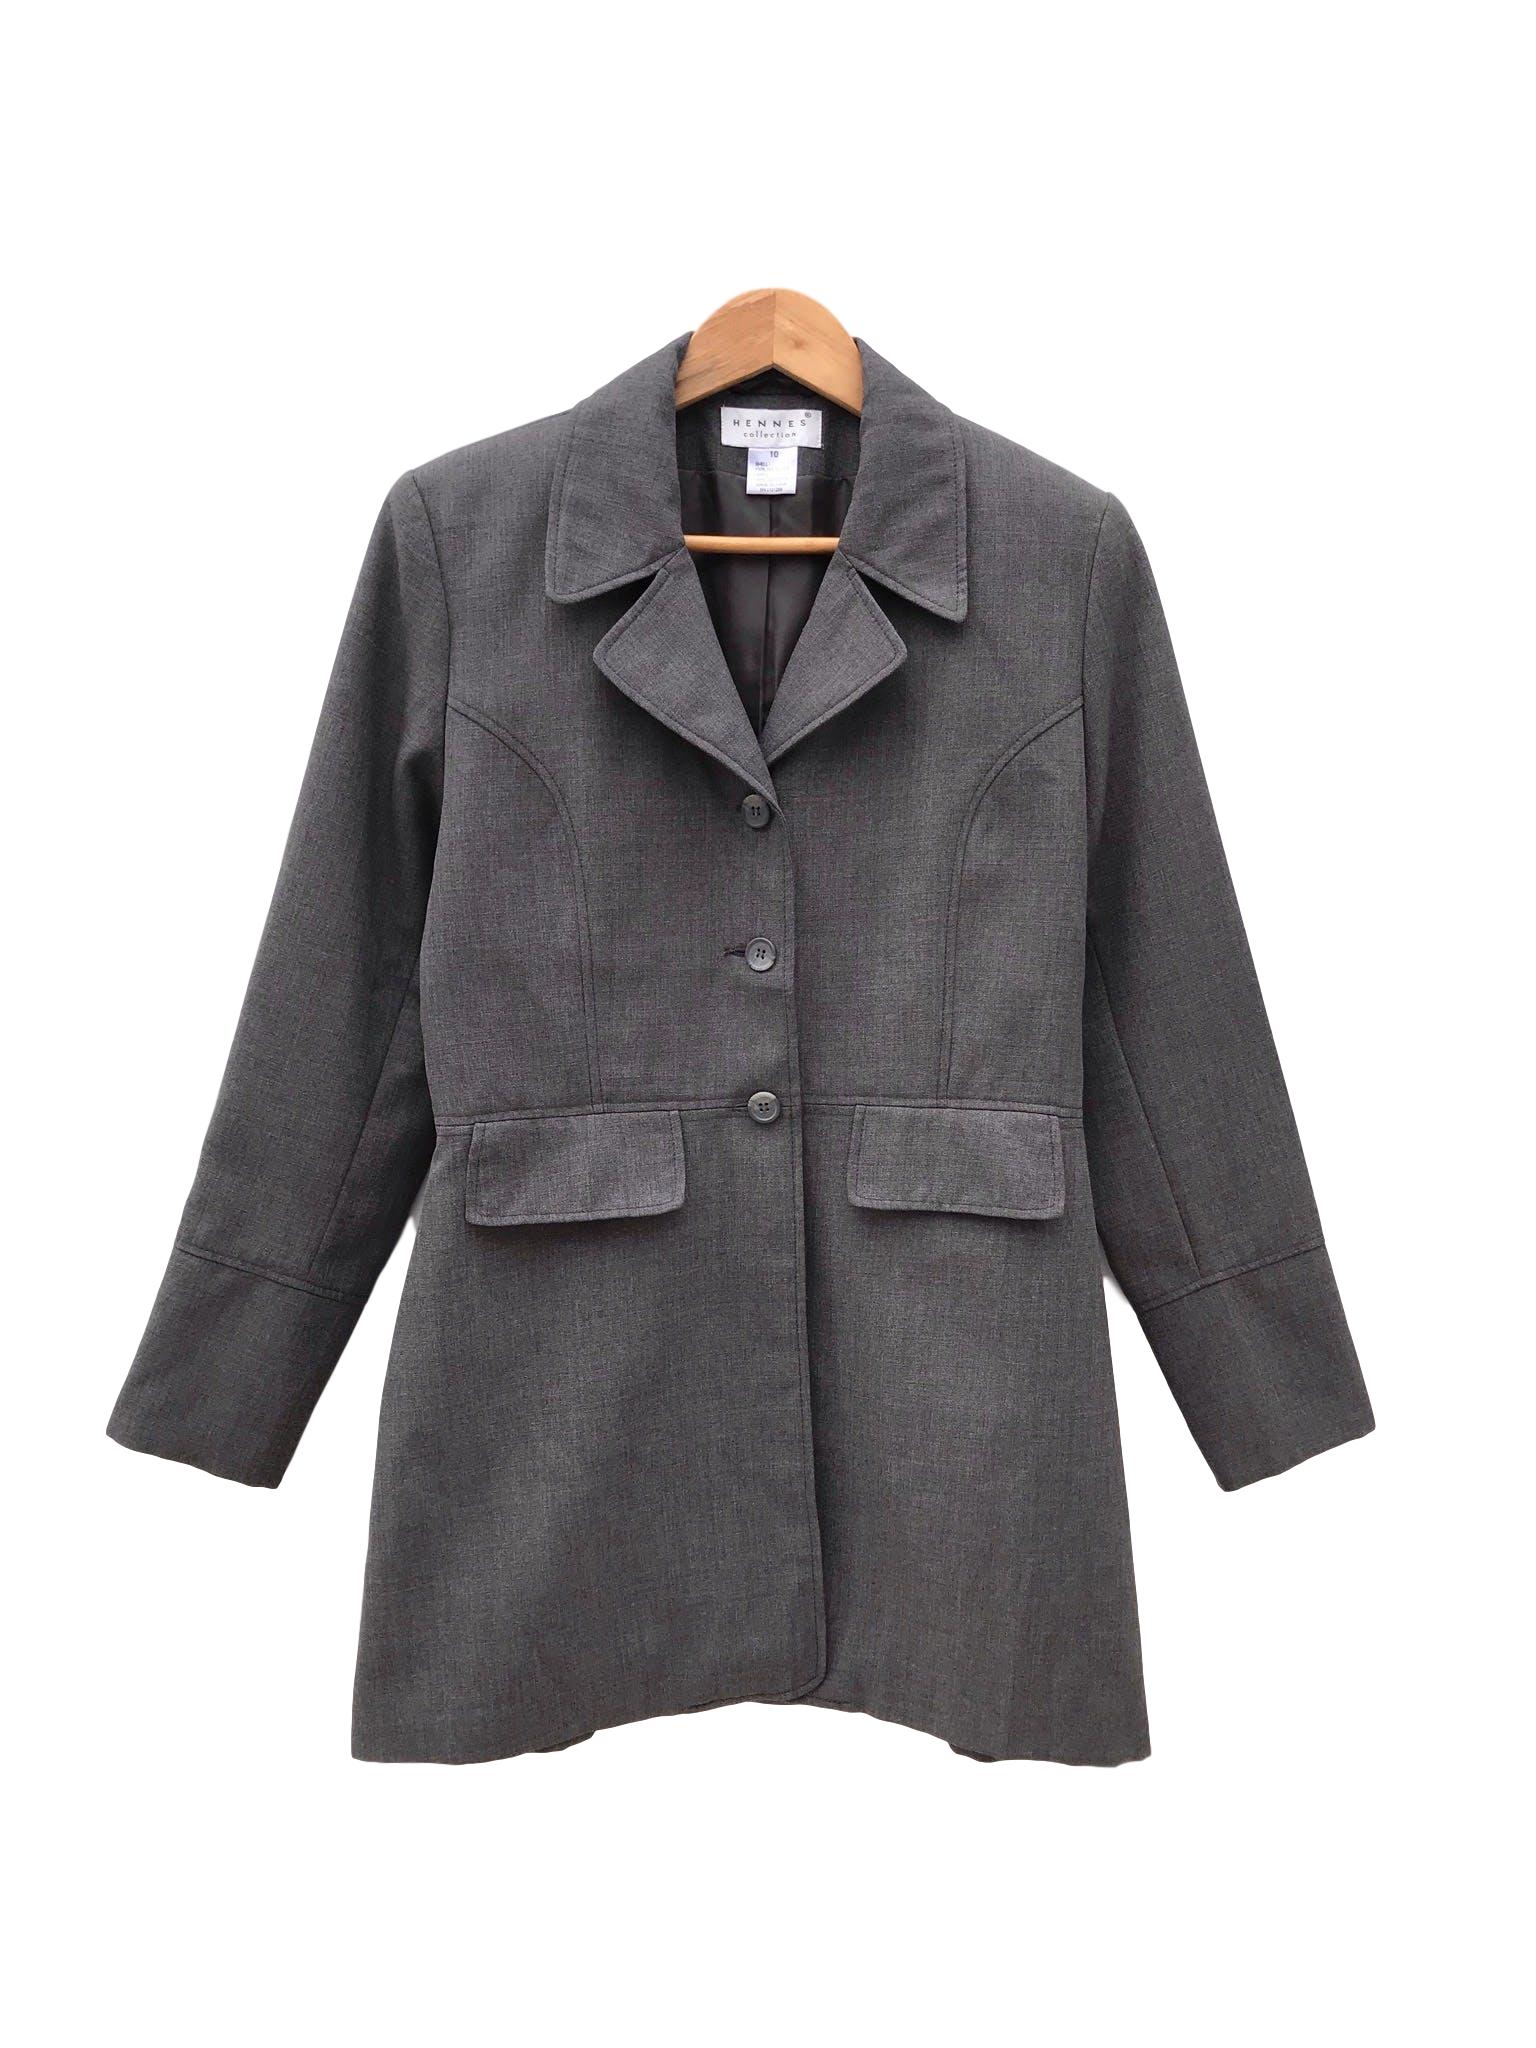 Abrigo gris tela tipo sastre, solapas, botones y bolsillos delanteros, lleva forro y cierre en los puños. Largo 84cm